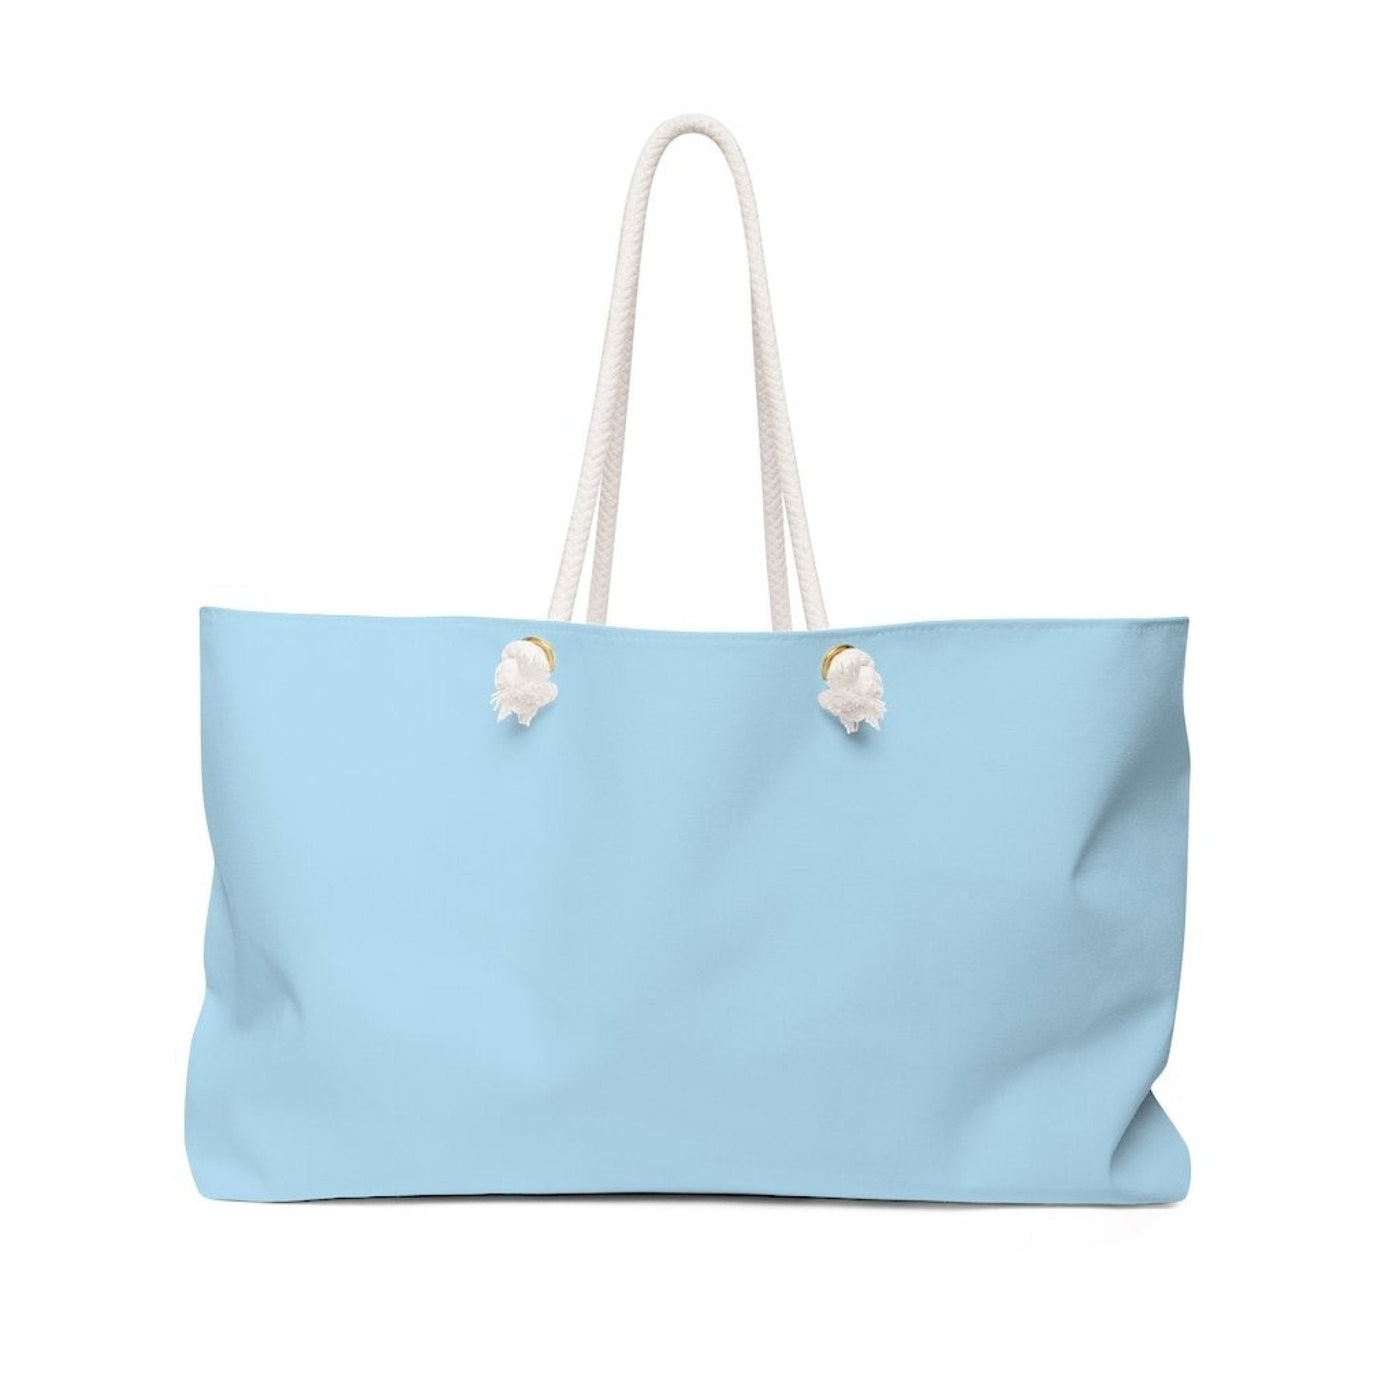 Weekender Tote Bag Powder Blue - Bags | Tote Bags | Weekender